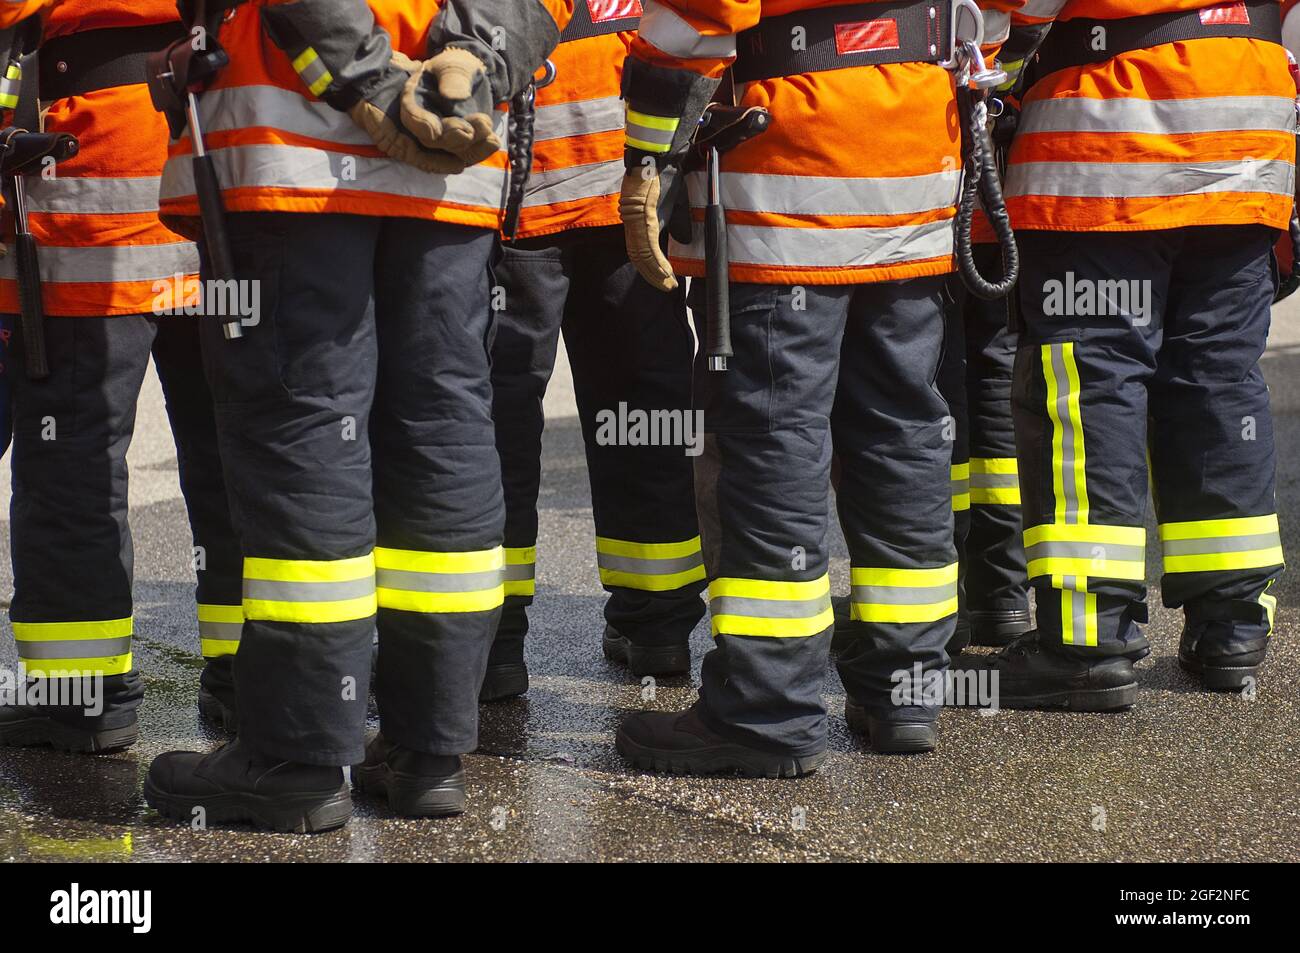 Pompiers debout ensemble, bandes rétroréfléchissantes et couleurs fluorescentes sur les vêtements de protection , Allemagne Banque D'Images